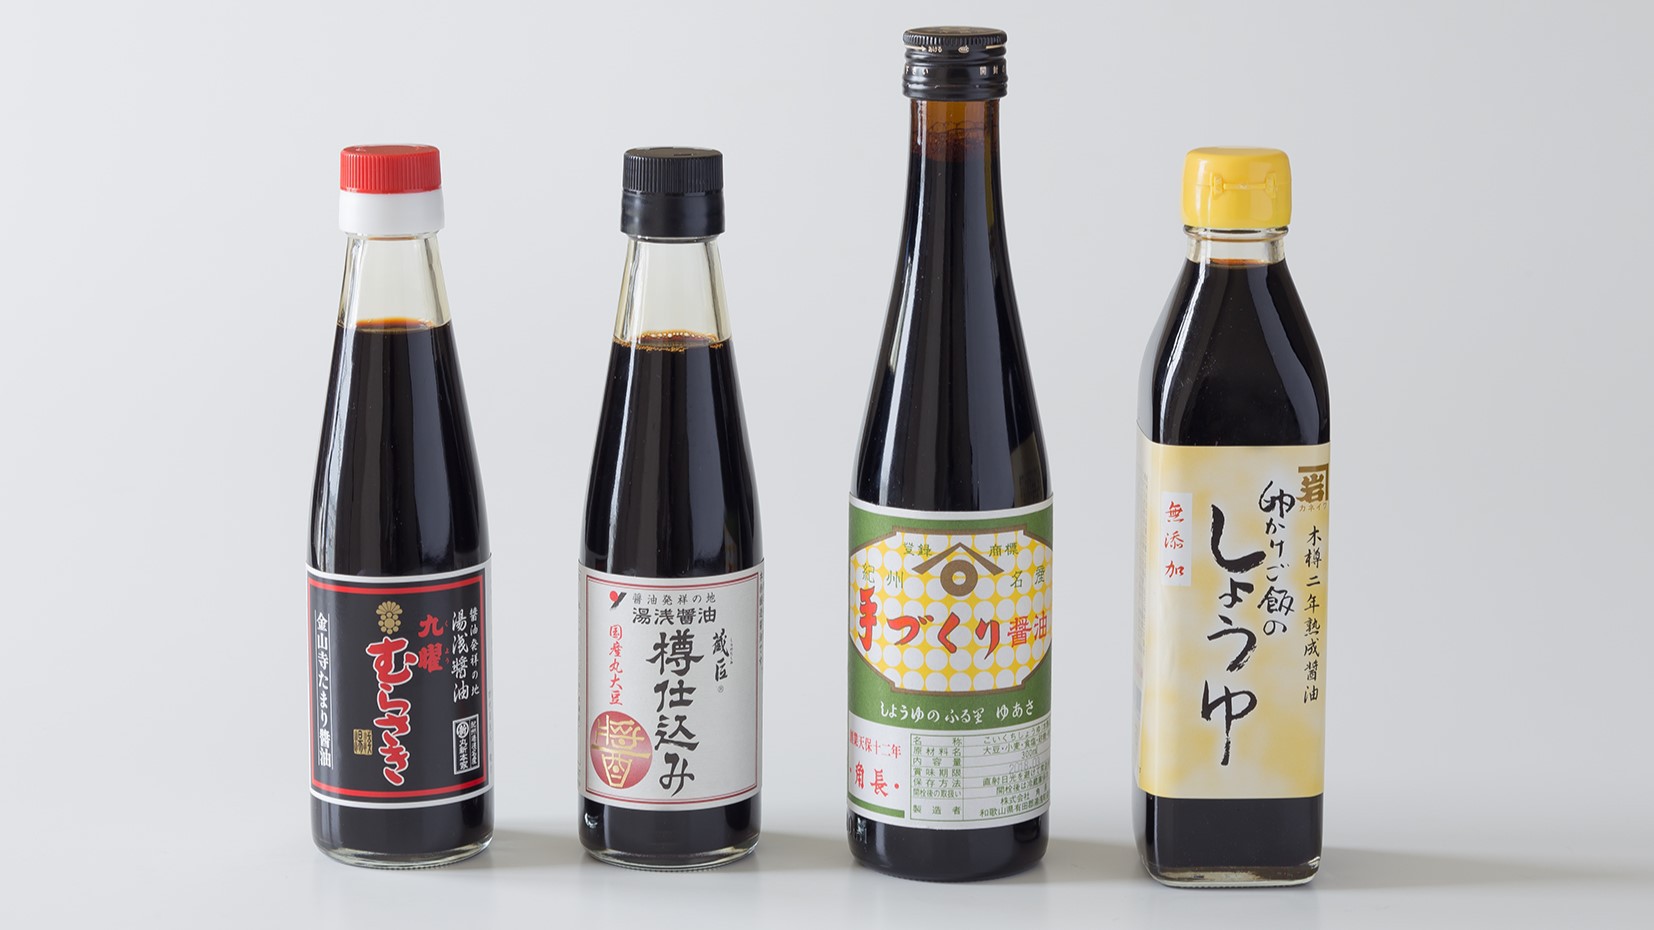 【まるごと和歌山の朝ごはん】醤油バー4種類の湯浅醤油はぜひ食べ比べてみて。